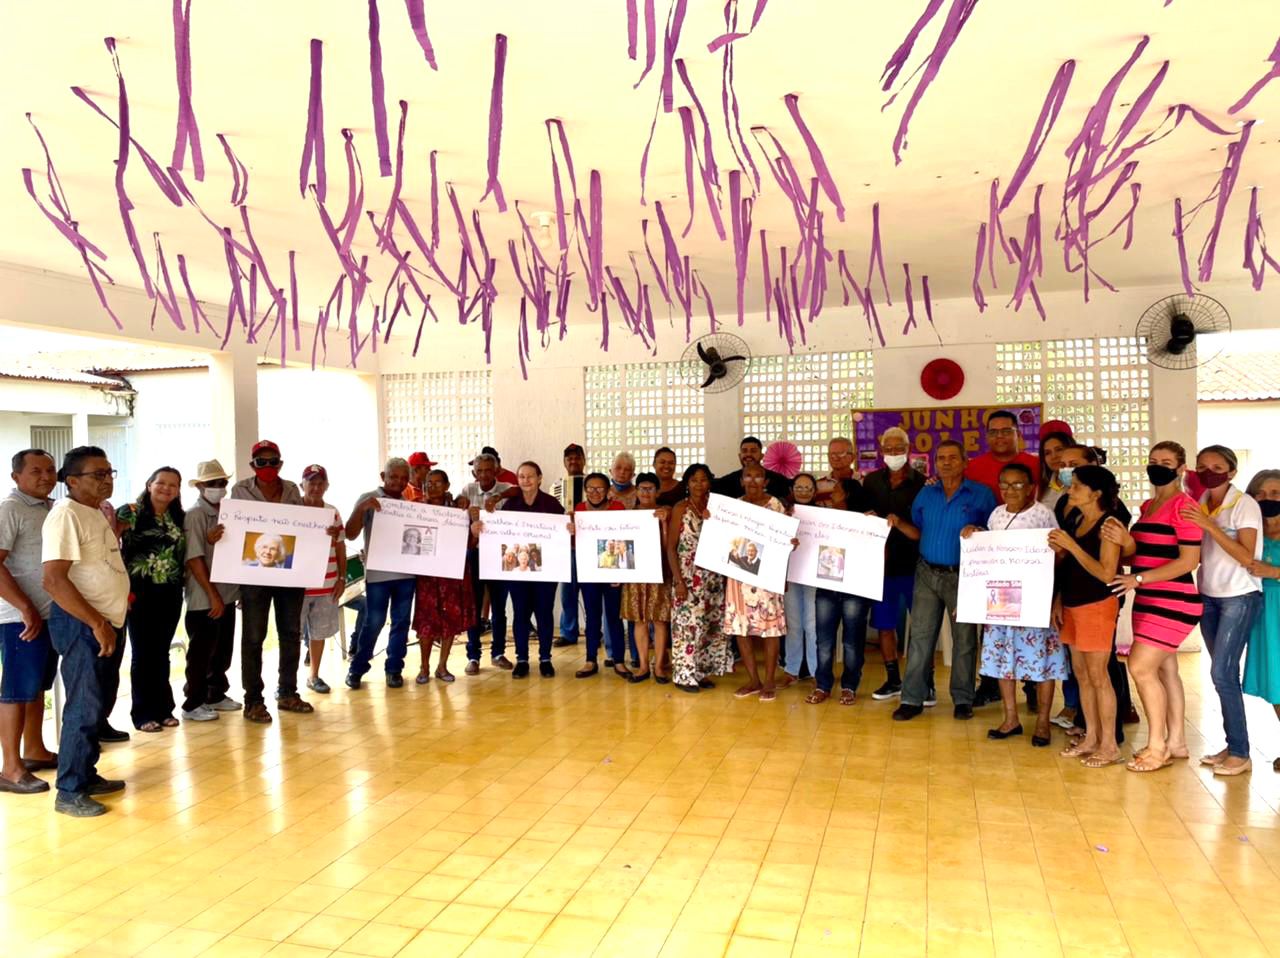 Prefeitura Municipal de Alexandria, através da Secretaria Municipal de Assistencia Social, promoveu ação em alusão ao Junho Violeta.